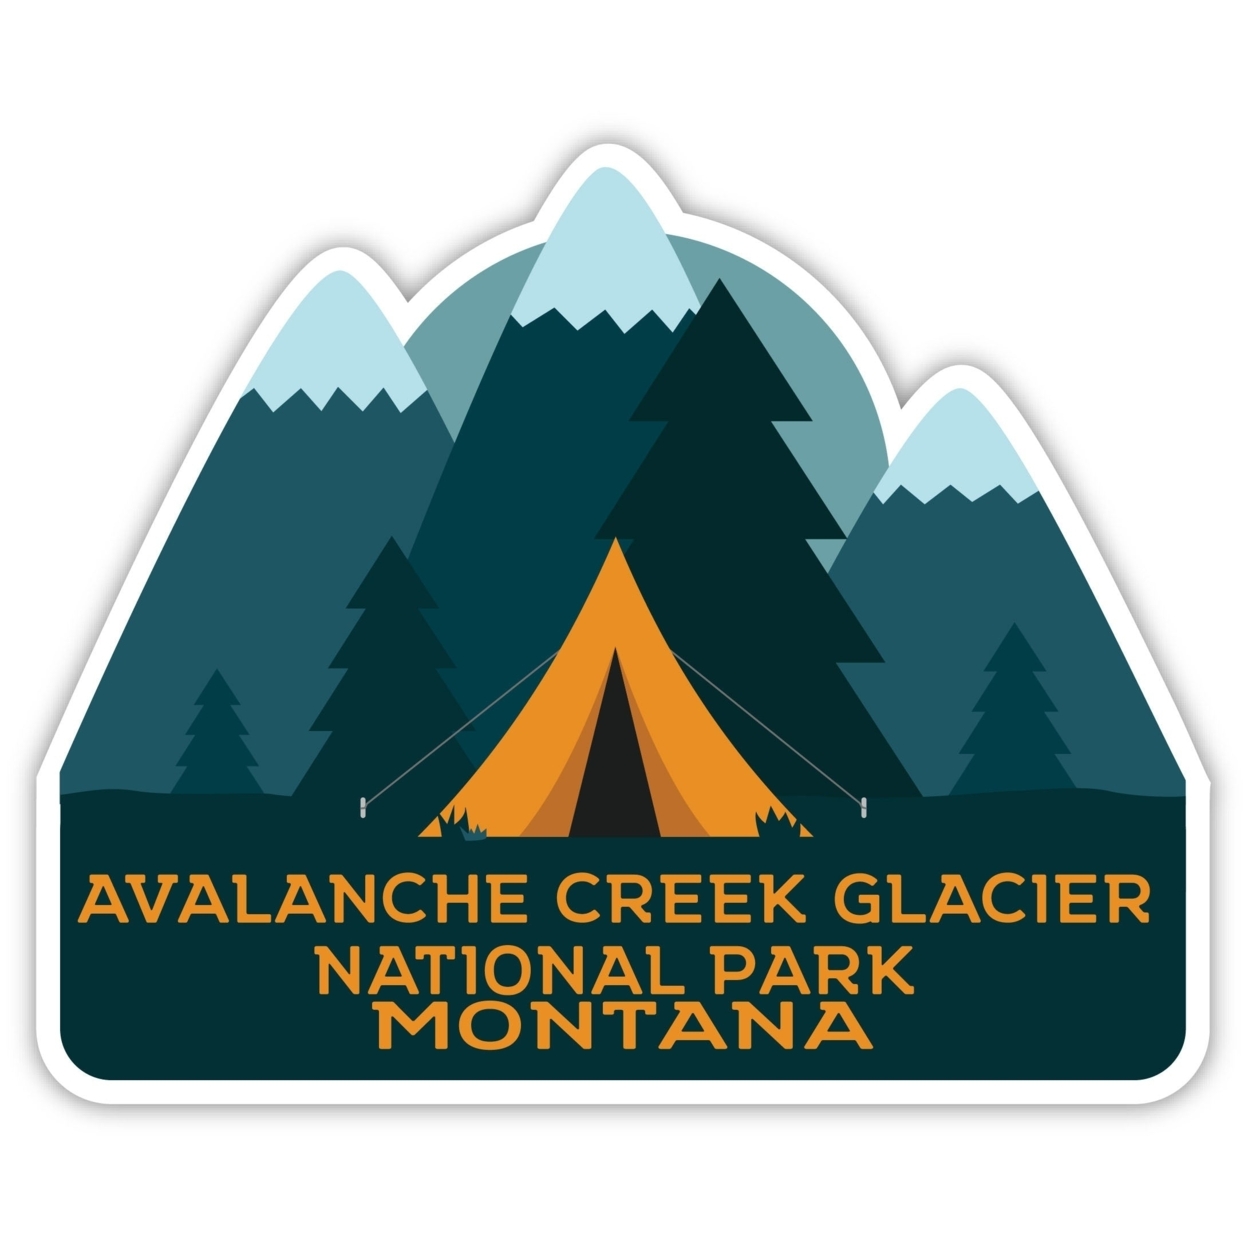 Avalanche Creek Glacier National Park Montana Souvenir Decorative Stickers (Choose Theme And Size) - Single Unit, 2-Inch, Tent